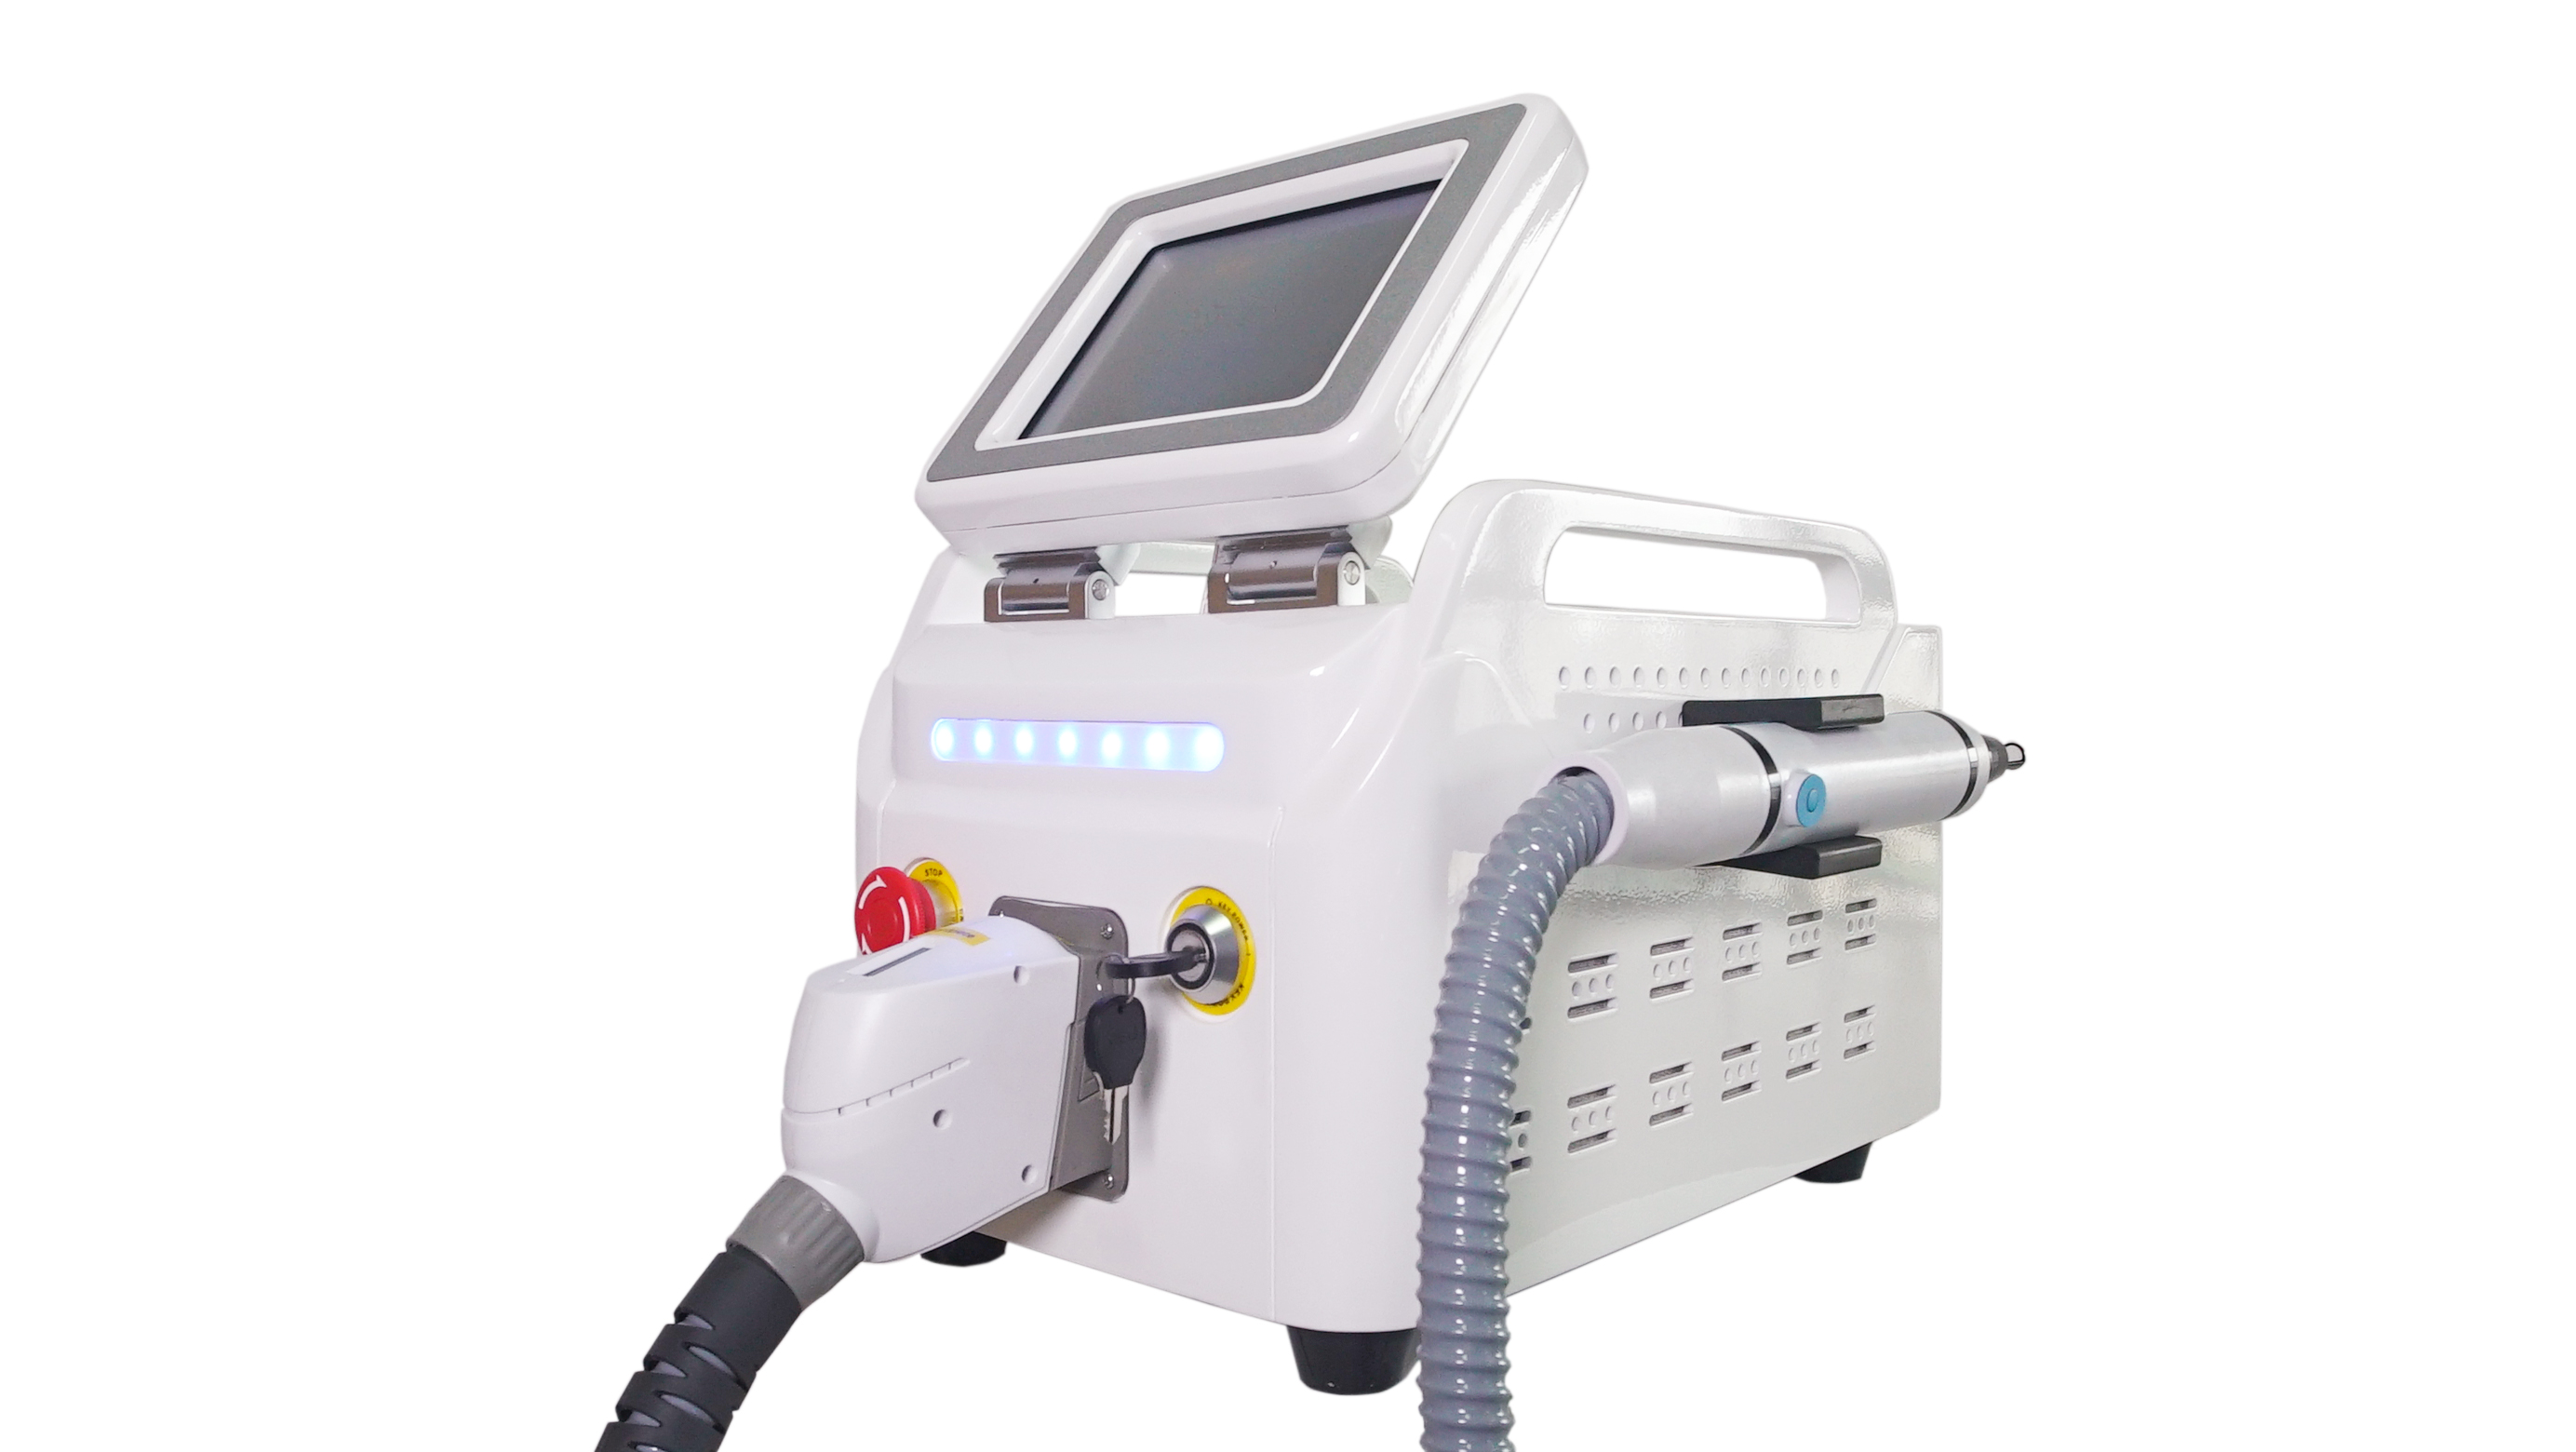 1064nm 532nm pikosekundni laser za izbjeljivanje kože, pjege za uklanjanje tetovaža Nd yag laserski stroj za uljepšavanje